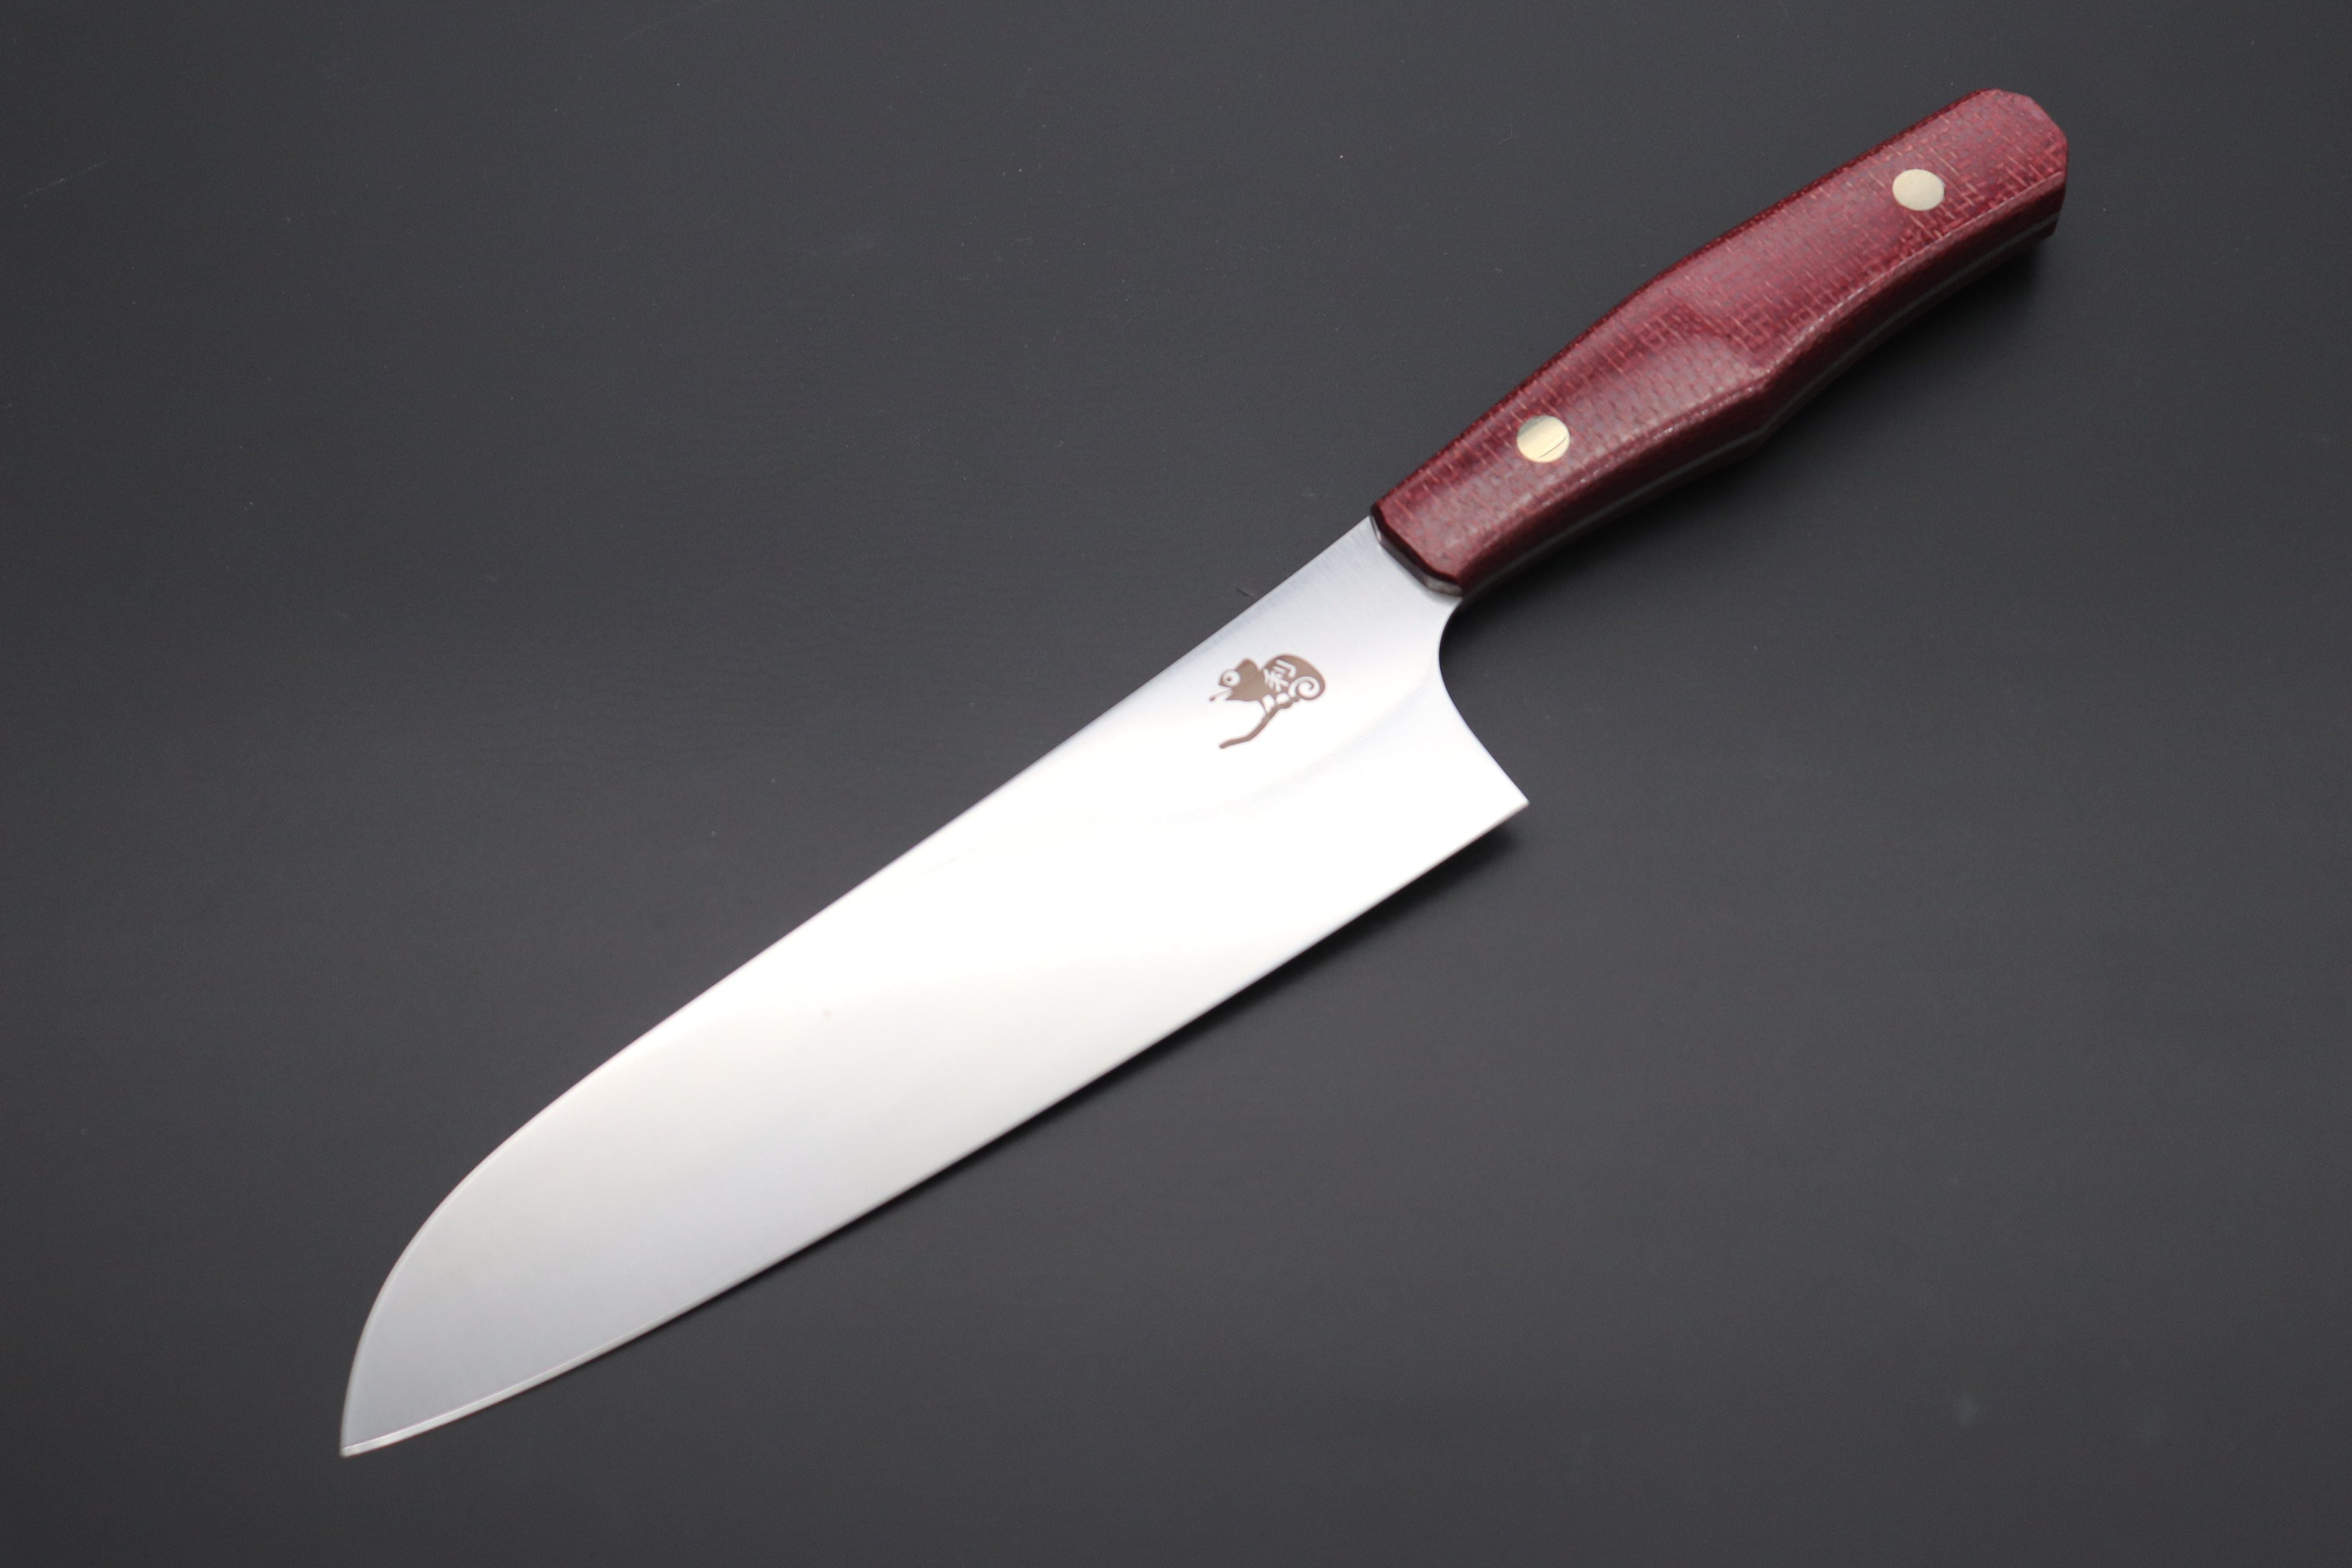 https://japanesechefsknife.com/cdn/shop/files/others-santoku-toshiyuki-takahashi-custom-kitchen-knife-tt-13-santoku-170mm-6-6-inch-43013132058907.jpg?v=1696222838